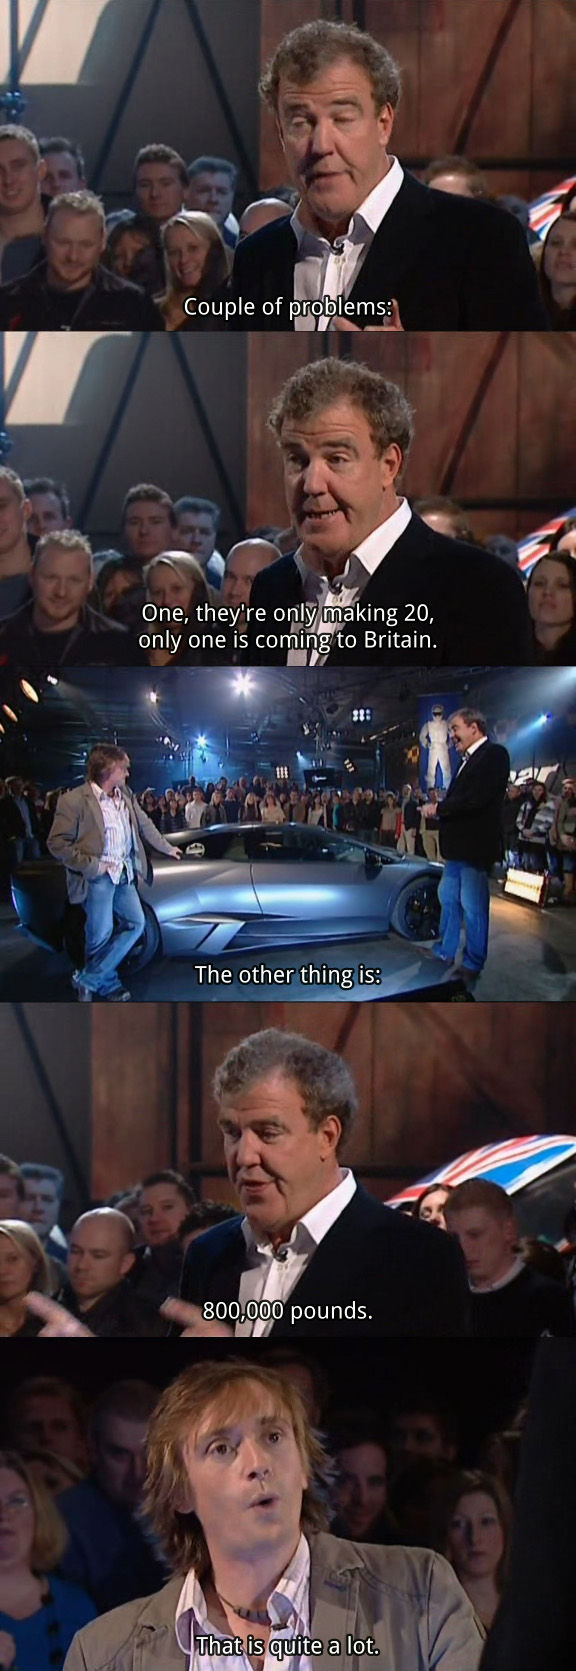 Jeremy Clarkson Gets Away With a Vagina Joke